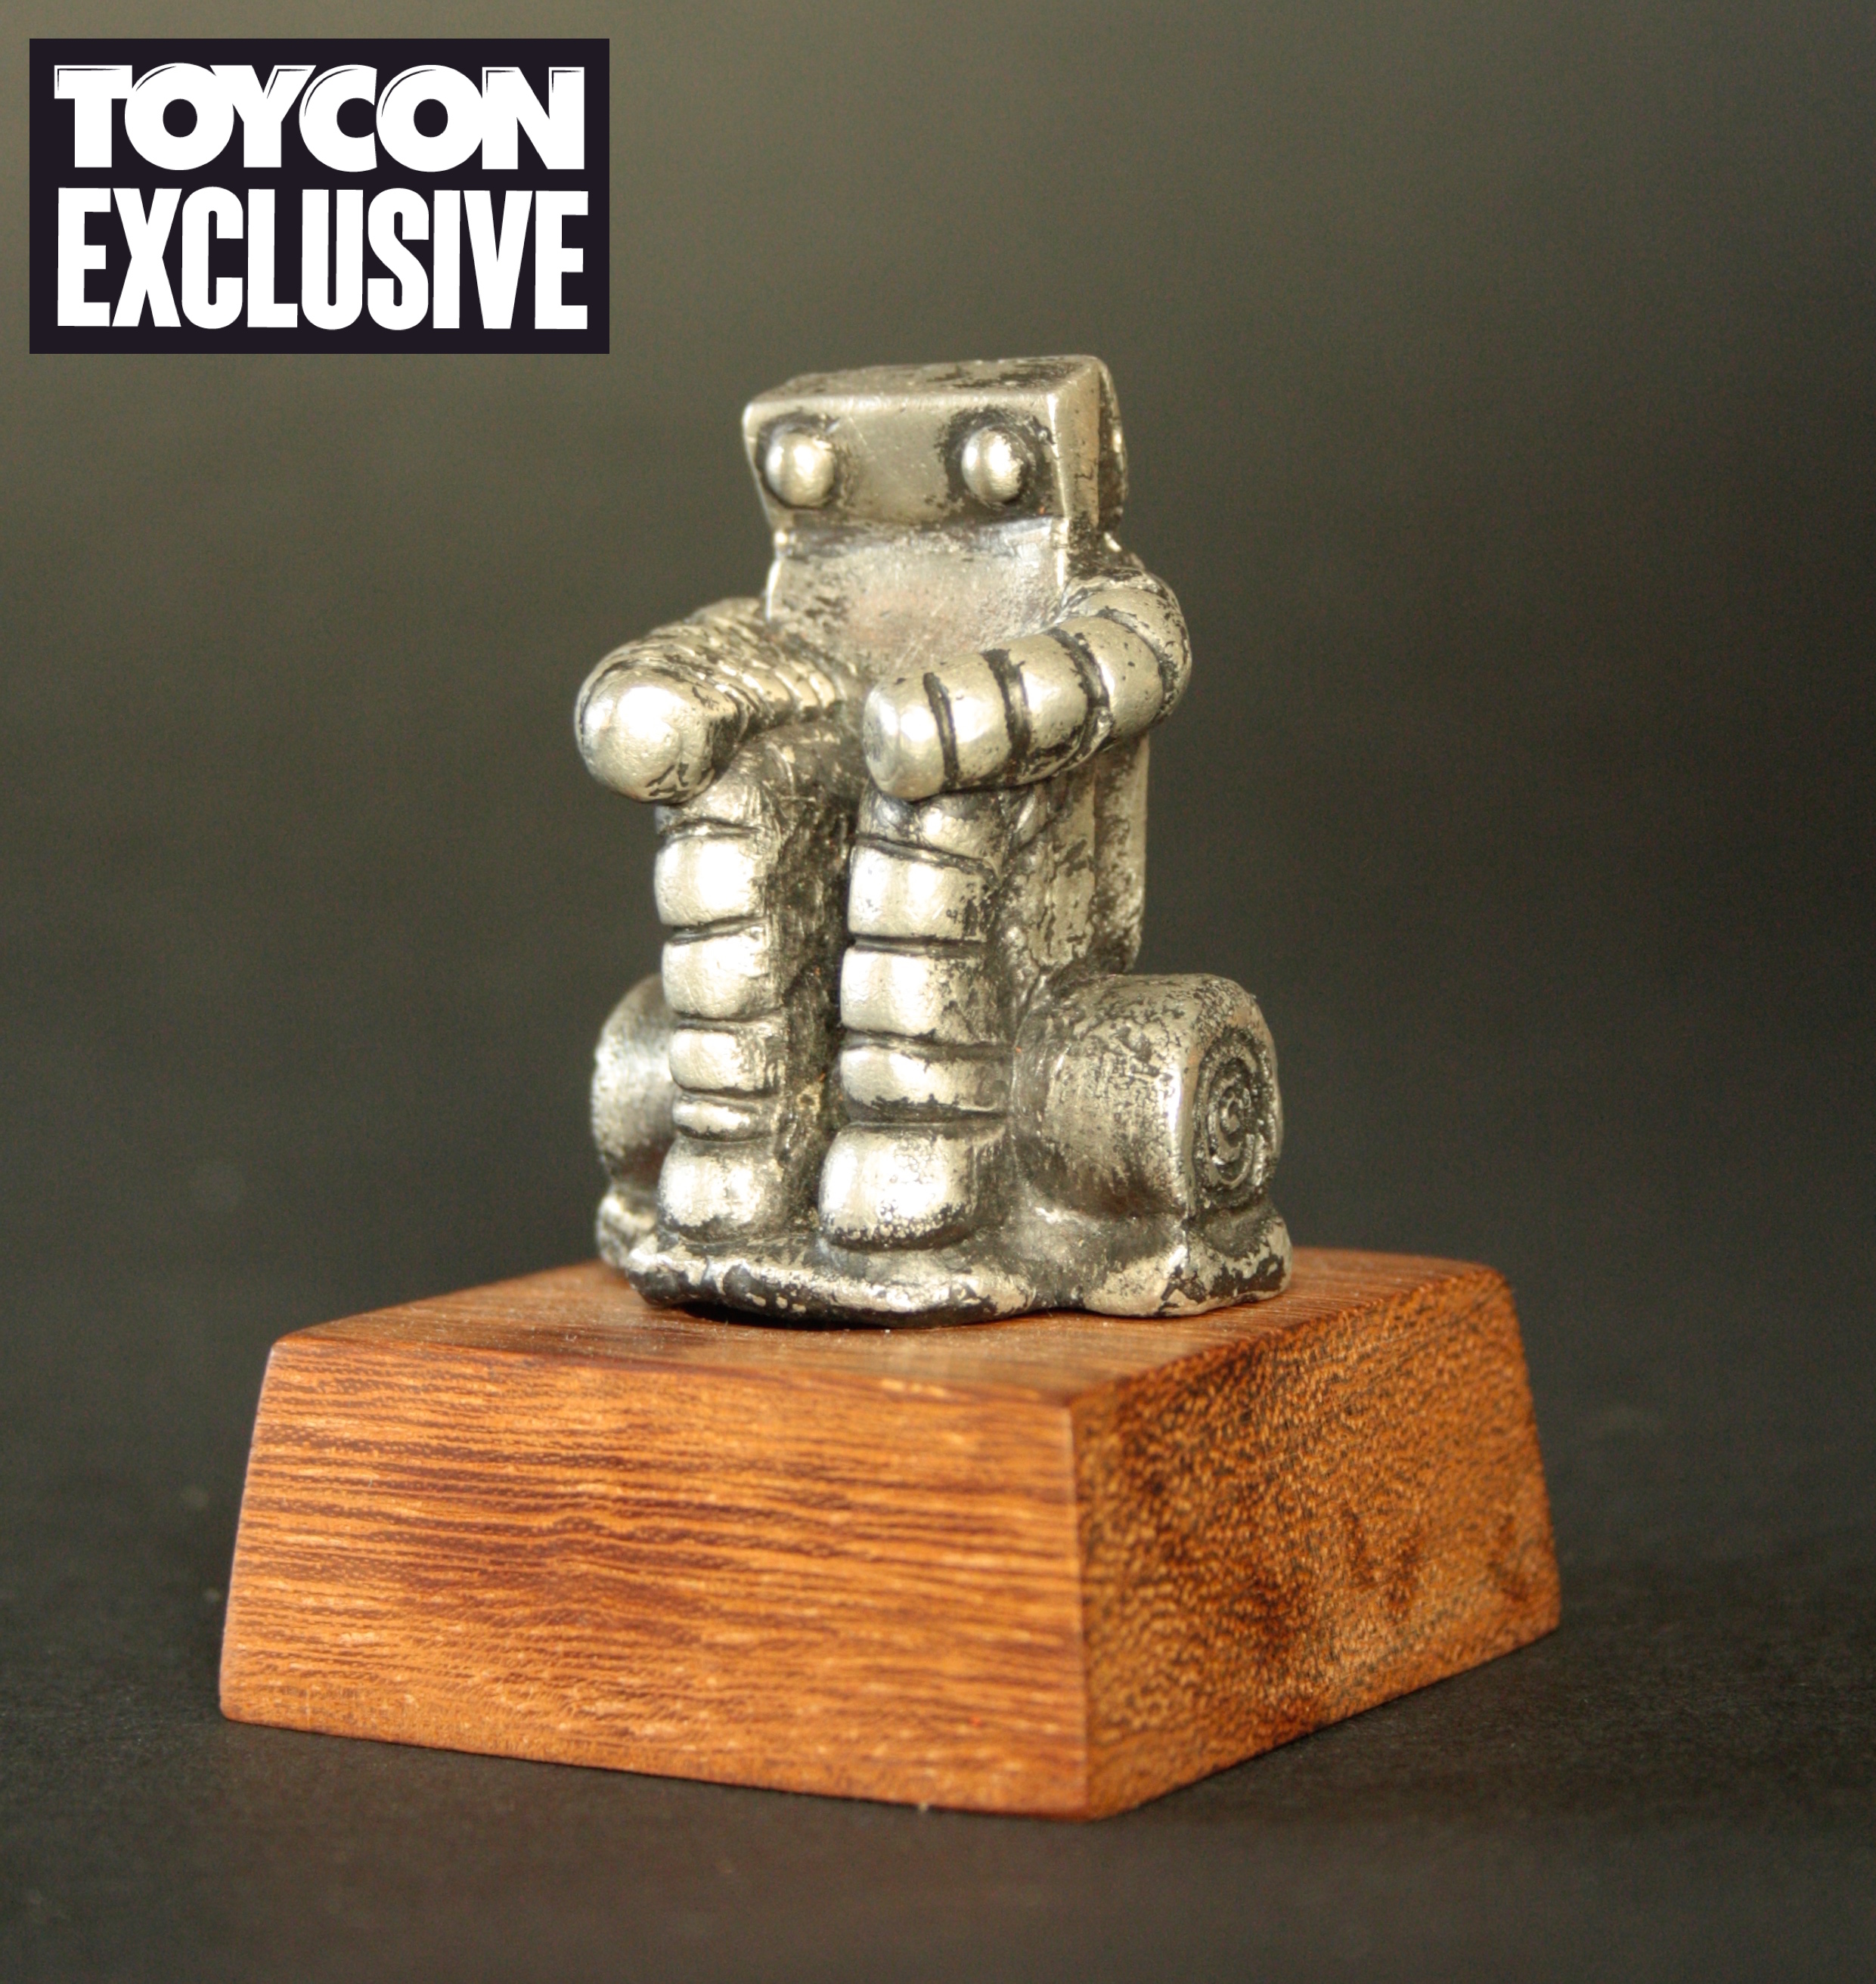 Andrew_Byham_Robot_#9_ToyCon